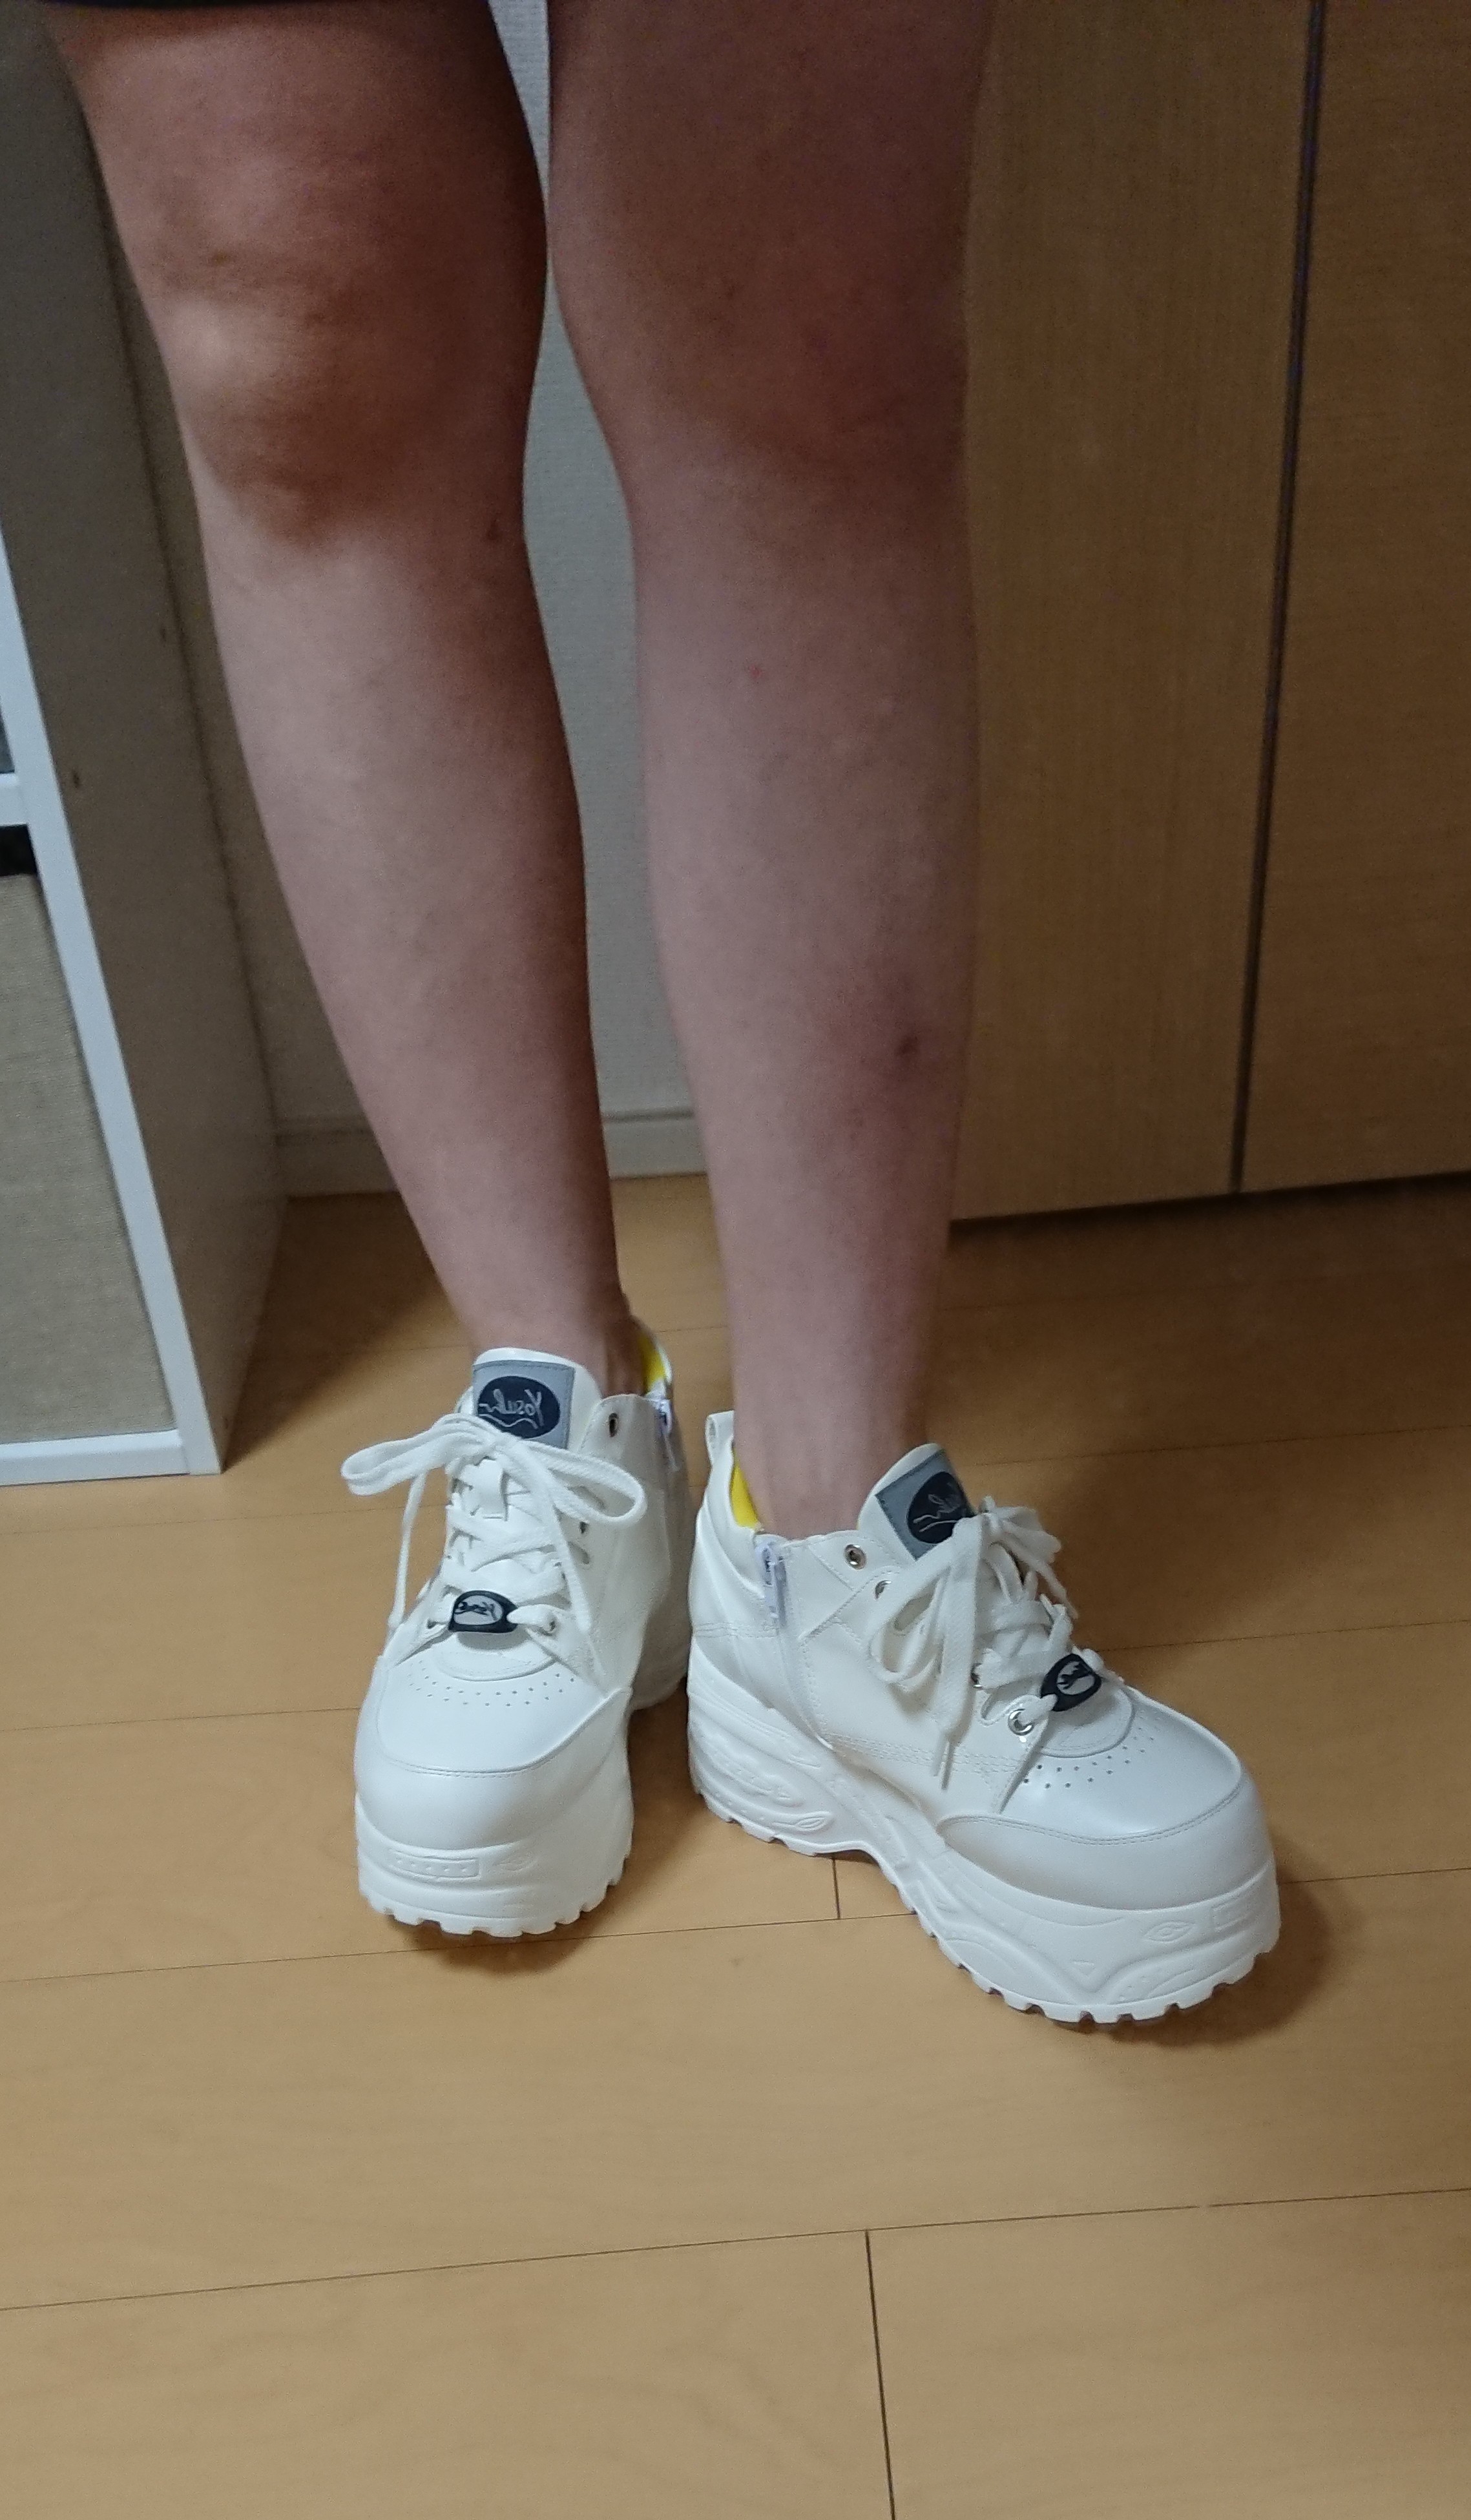 ヨースケ YOSUKE 厚底スニーカー （ホワイトマルチ） -靴 